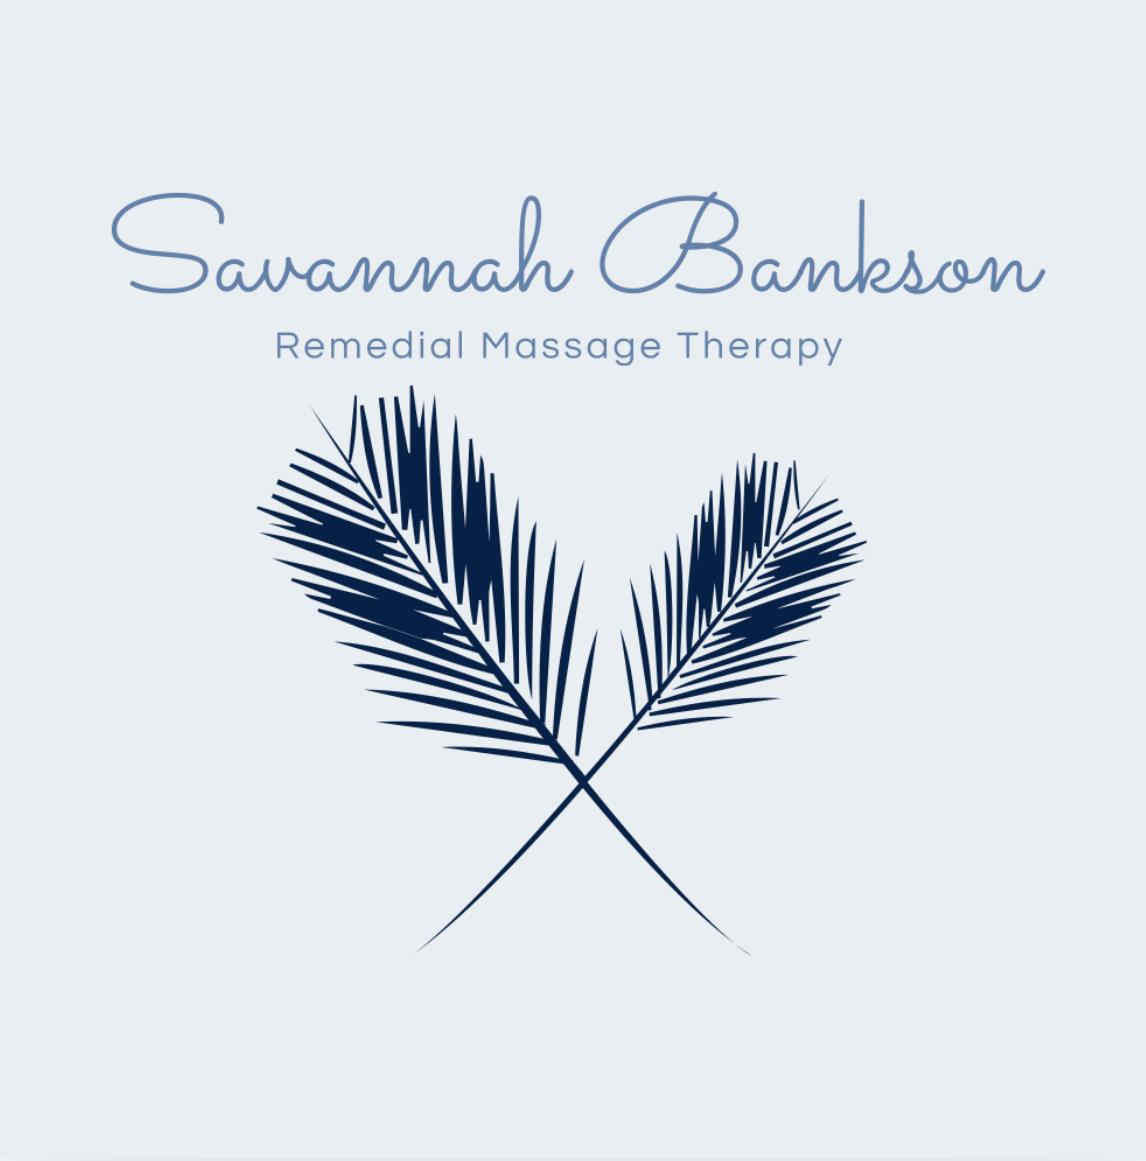 Savannah Bankson